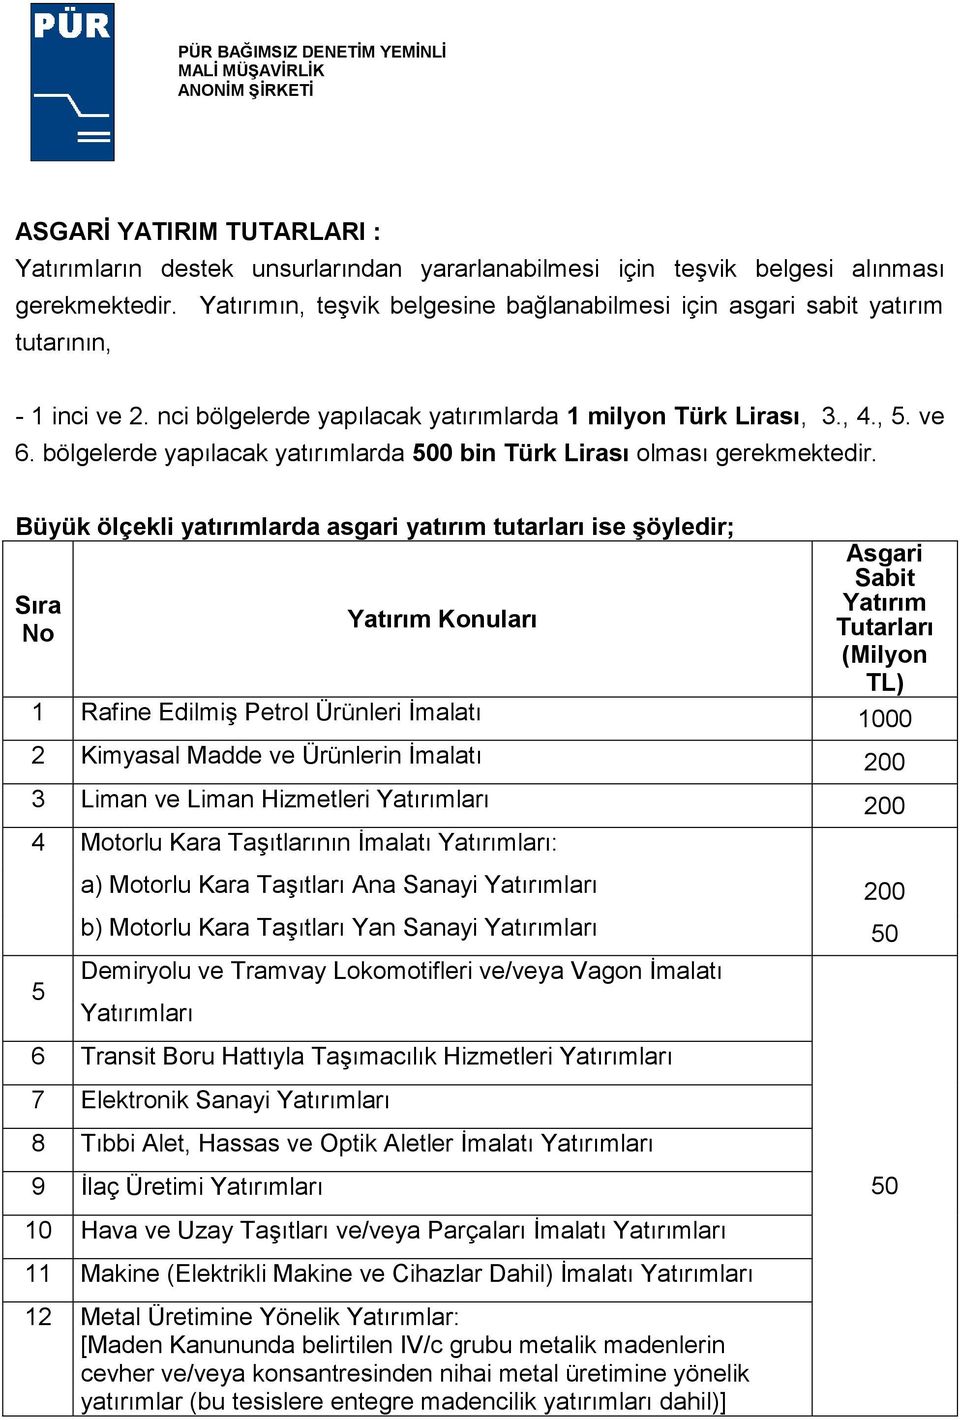 bölgelerde yapılacak yatırımlarda 500 bin Türk Lirası olması gerekmektedir.